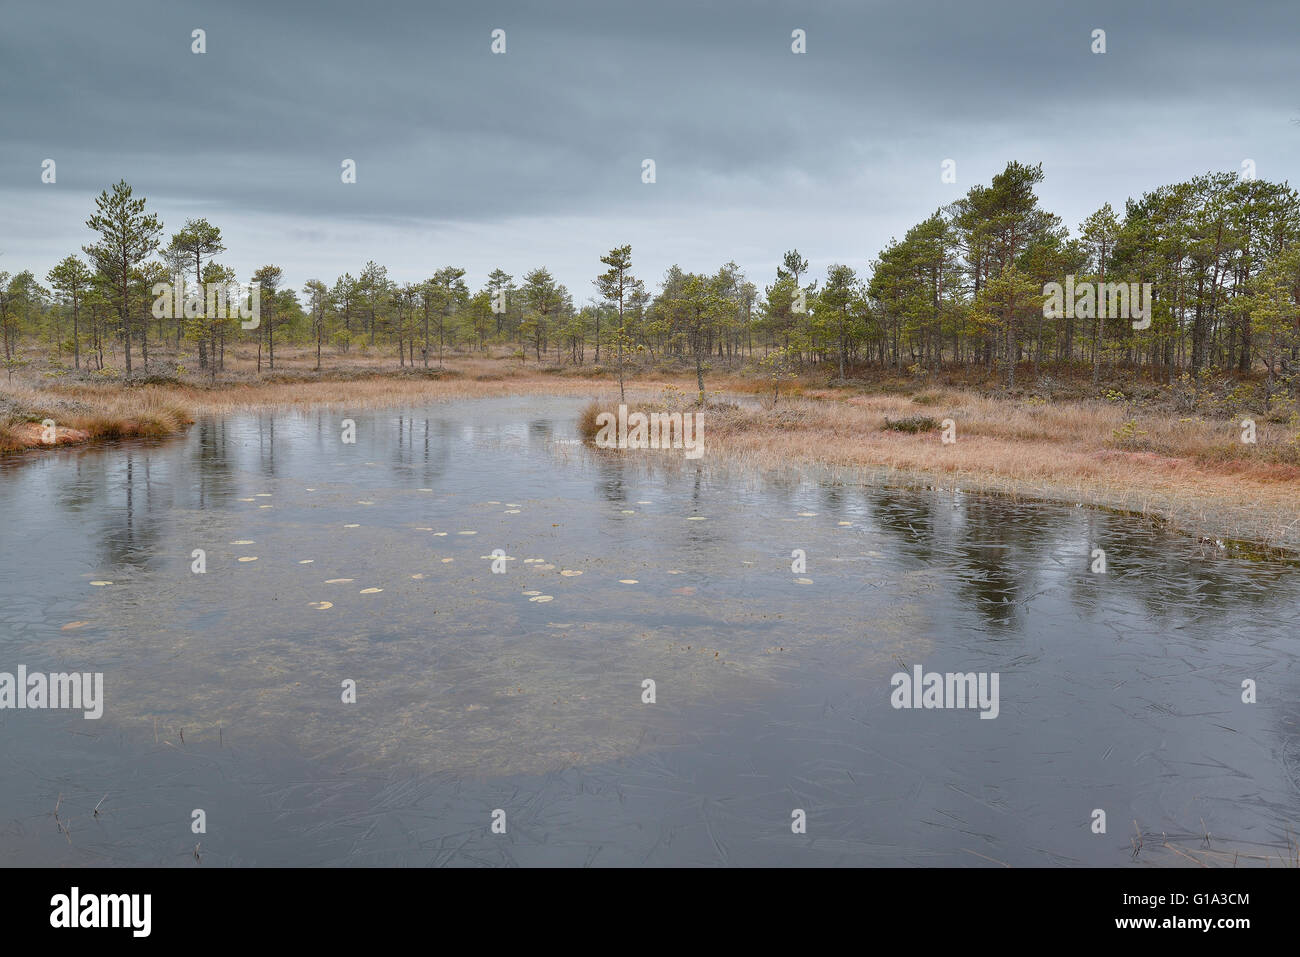 Bog pool in Alam-Pedja Nature Reserve, Estonia Stock Photo